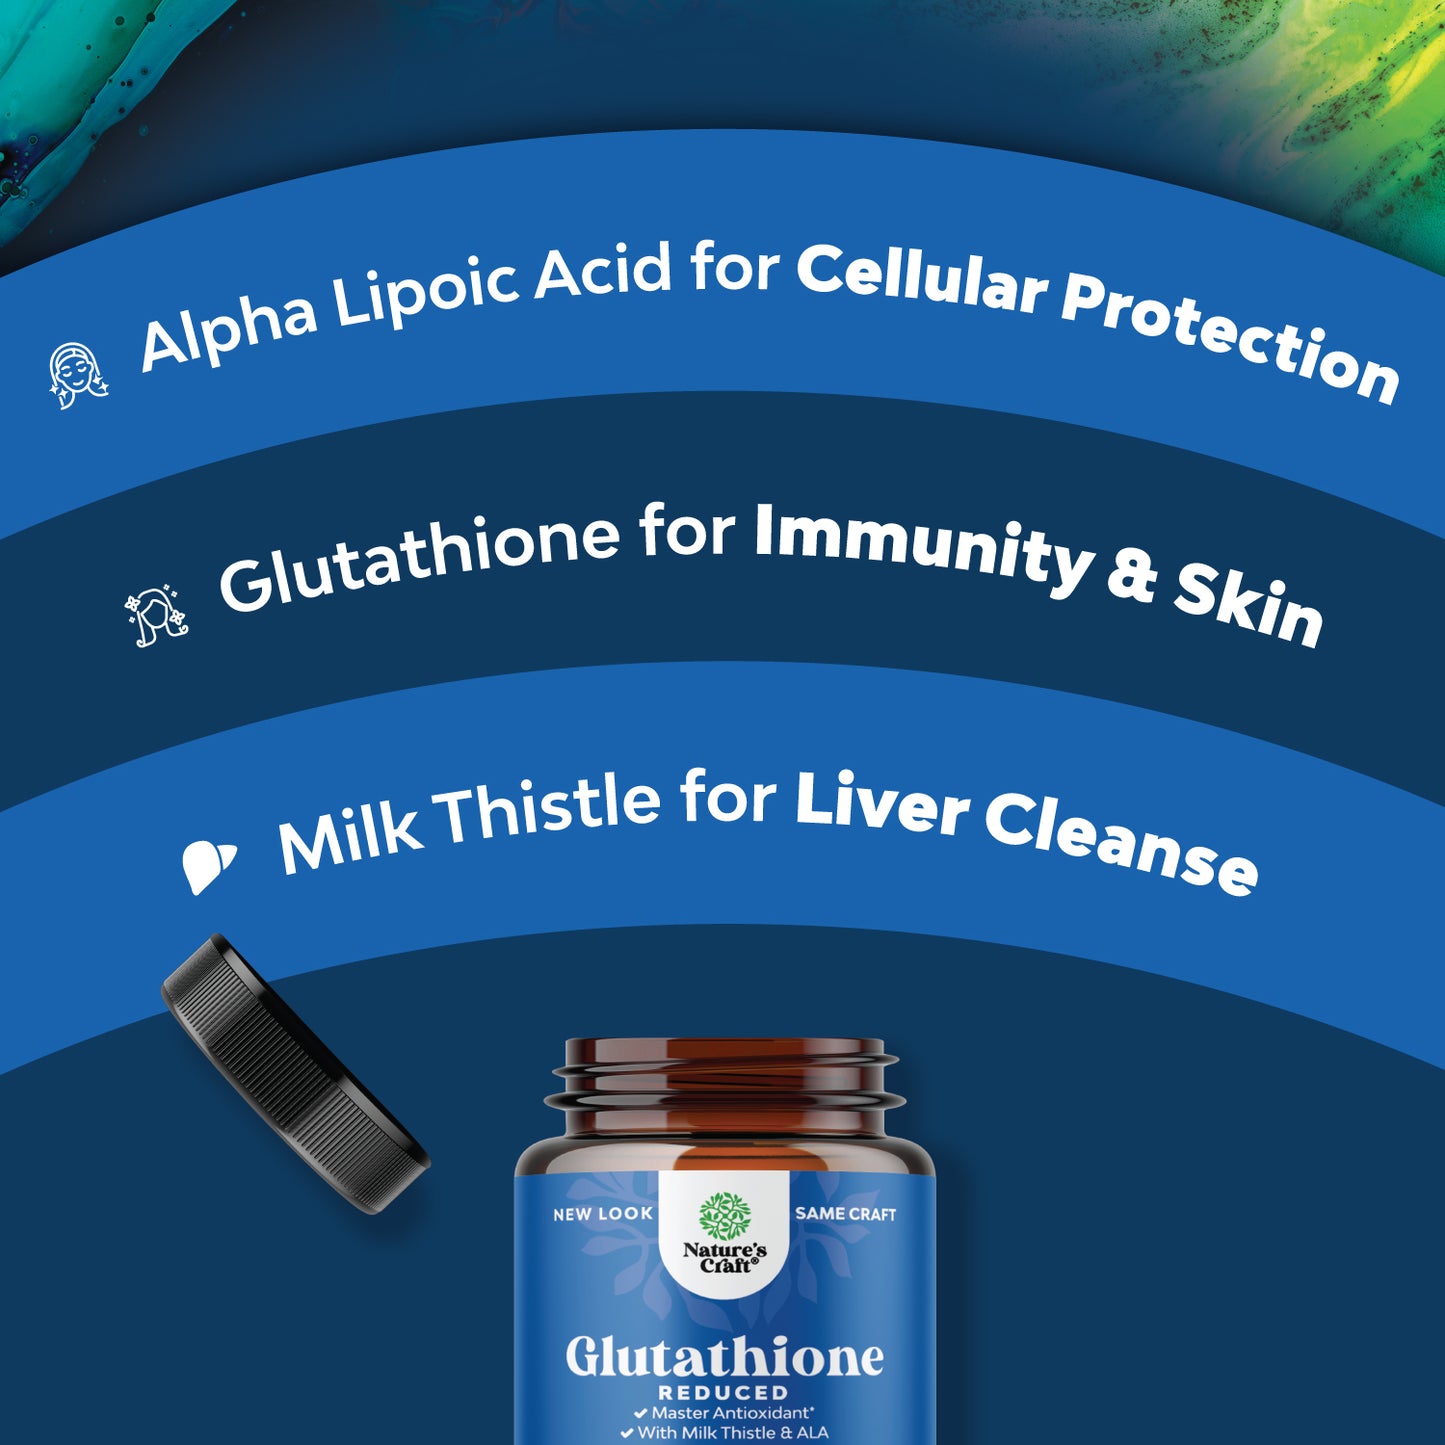 Glutathione - 15 Capsules - Nature's Craft